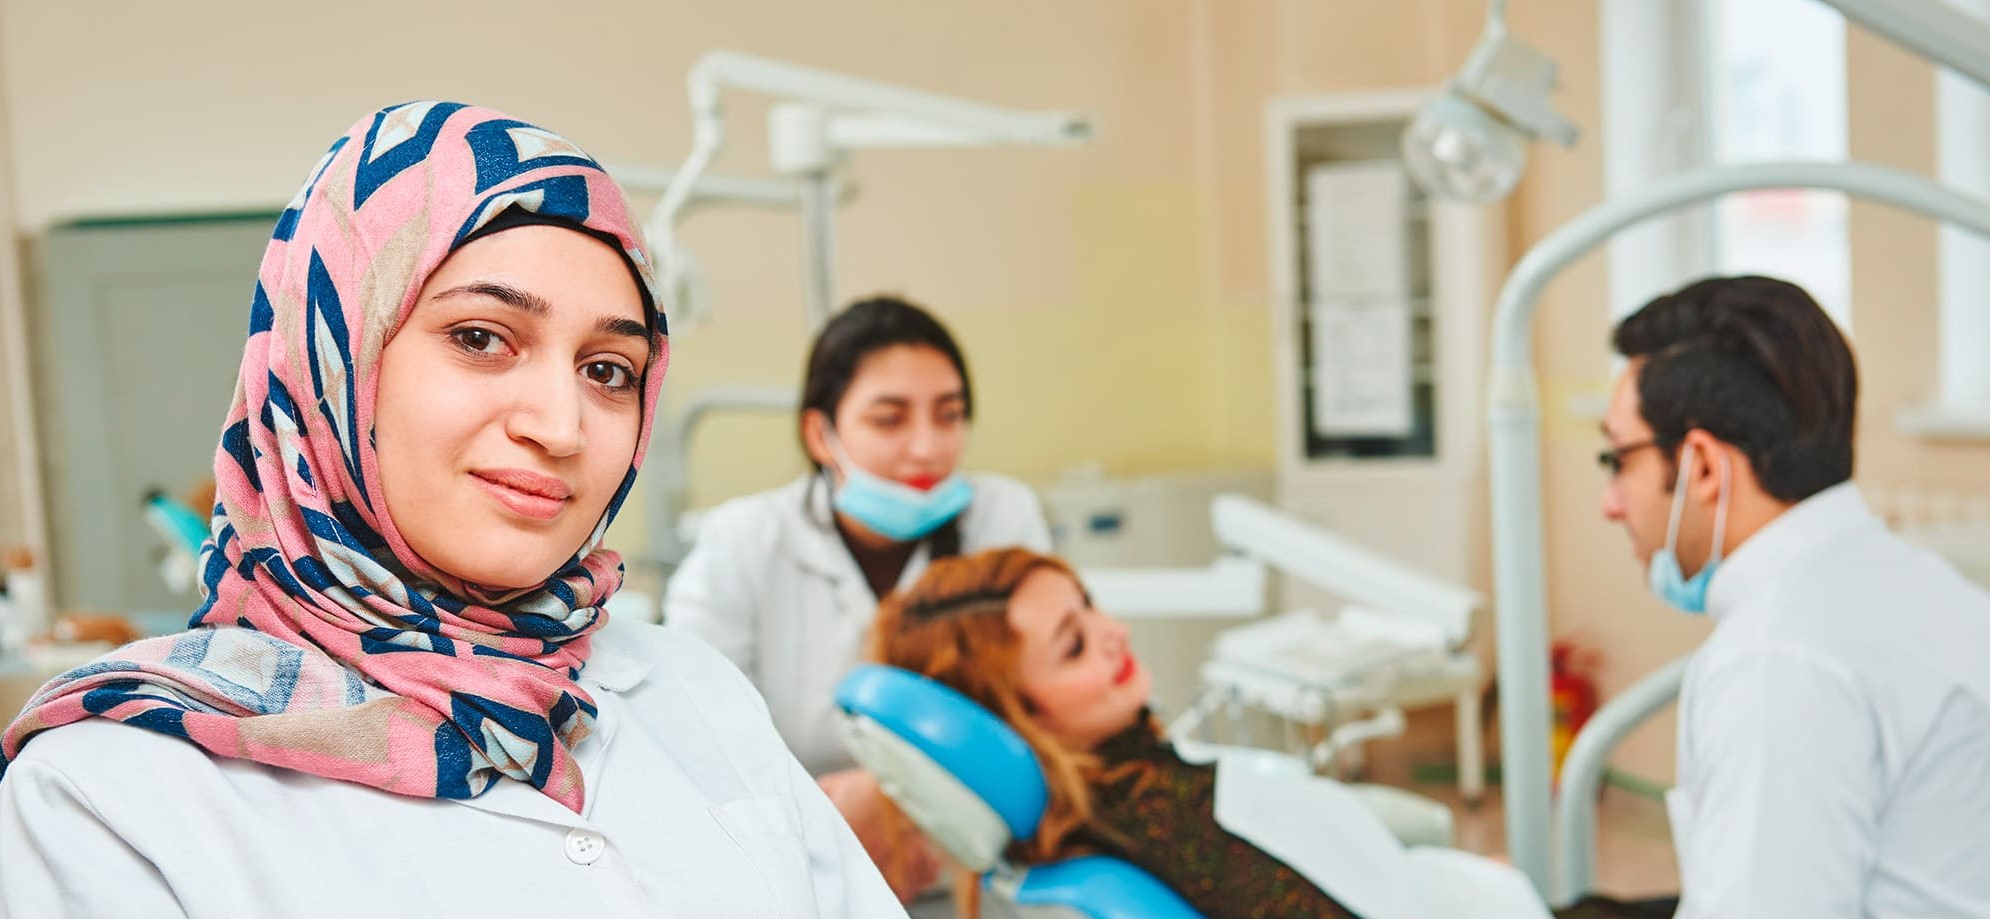 Frau mit Kopftuch im Arztkittel im Vordergrund - im Hintergrund Patientin auf Zahnarztstuhl